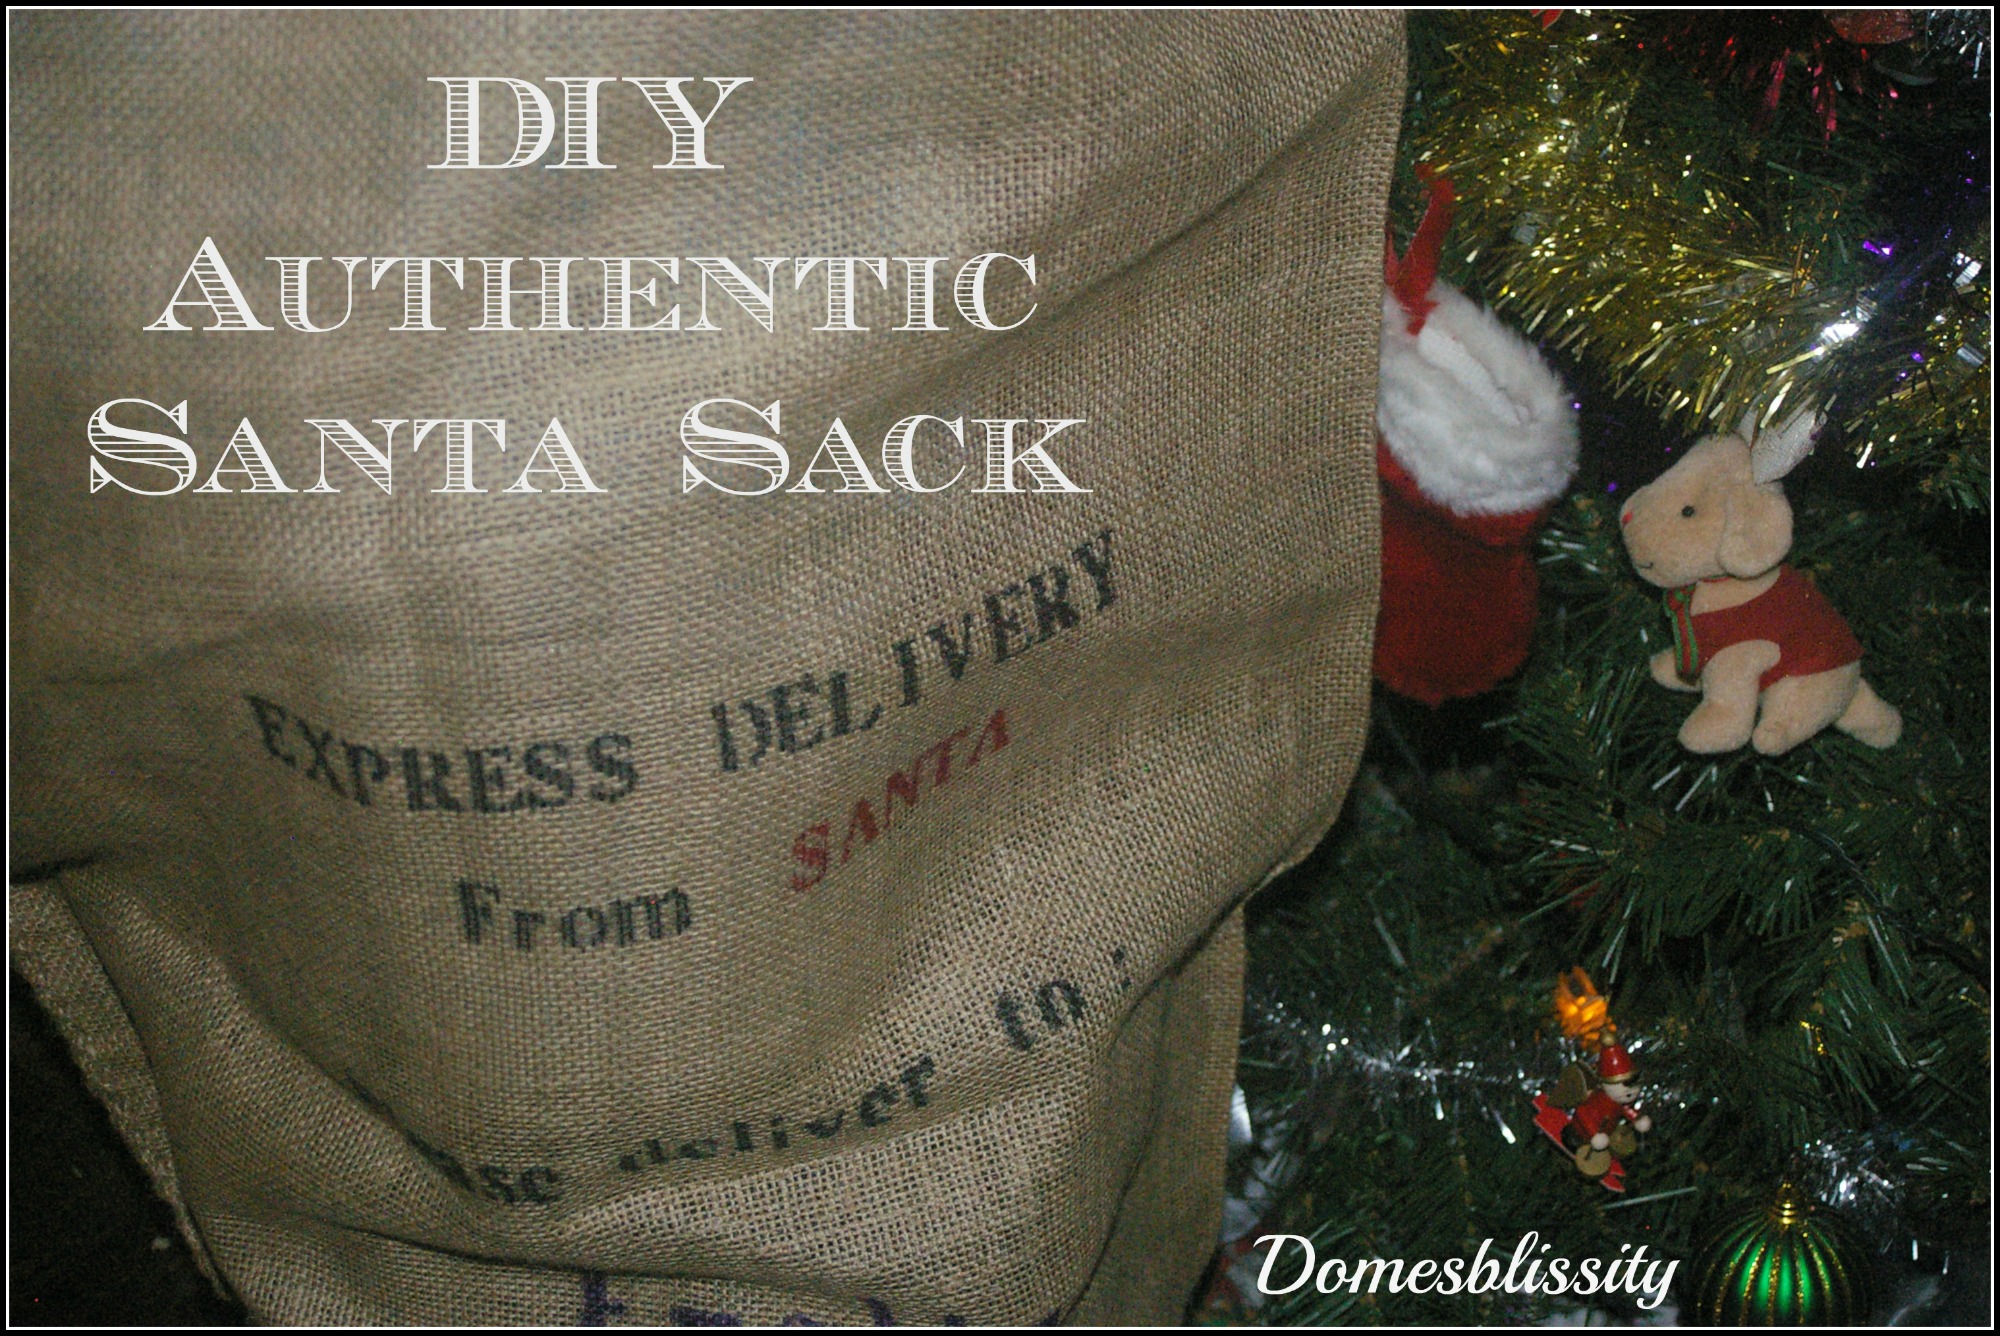 DIY authentic Santa sacks